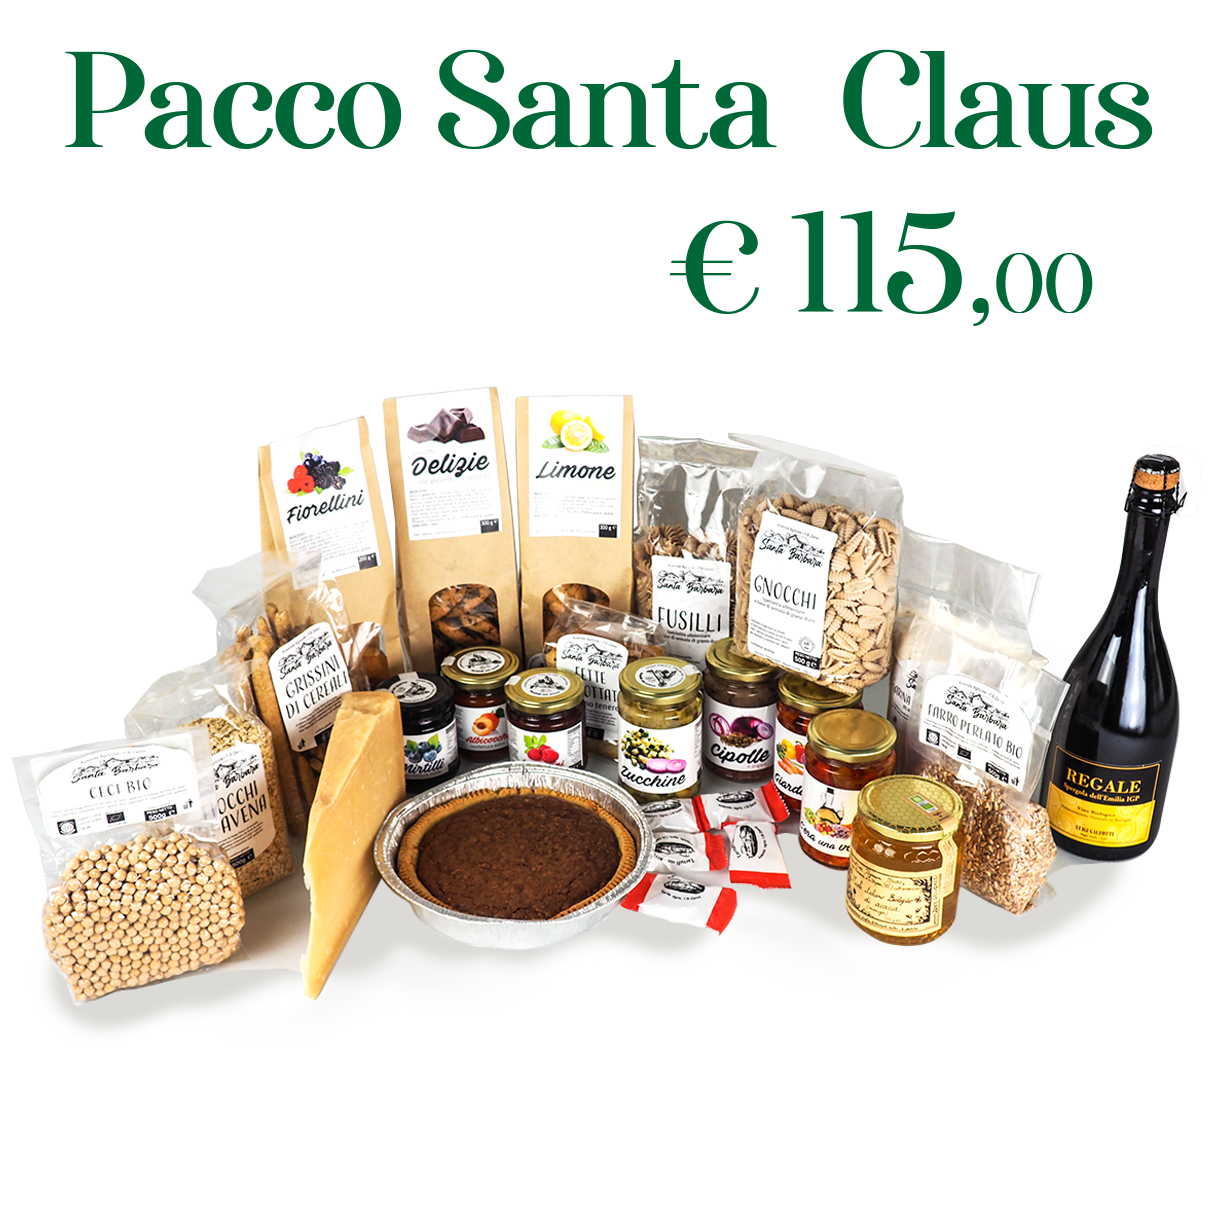 Pacco-Santa-Claus-ok